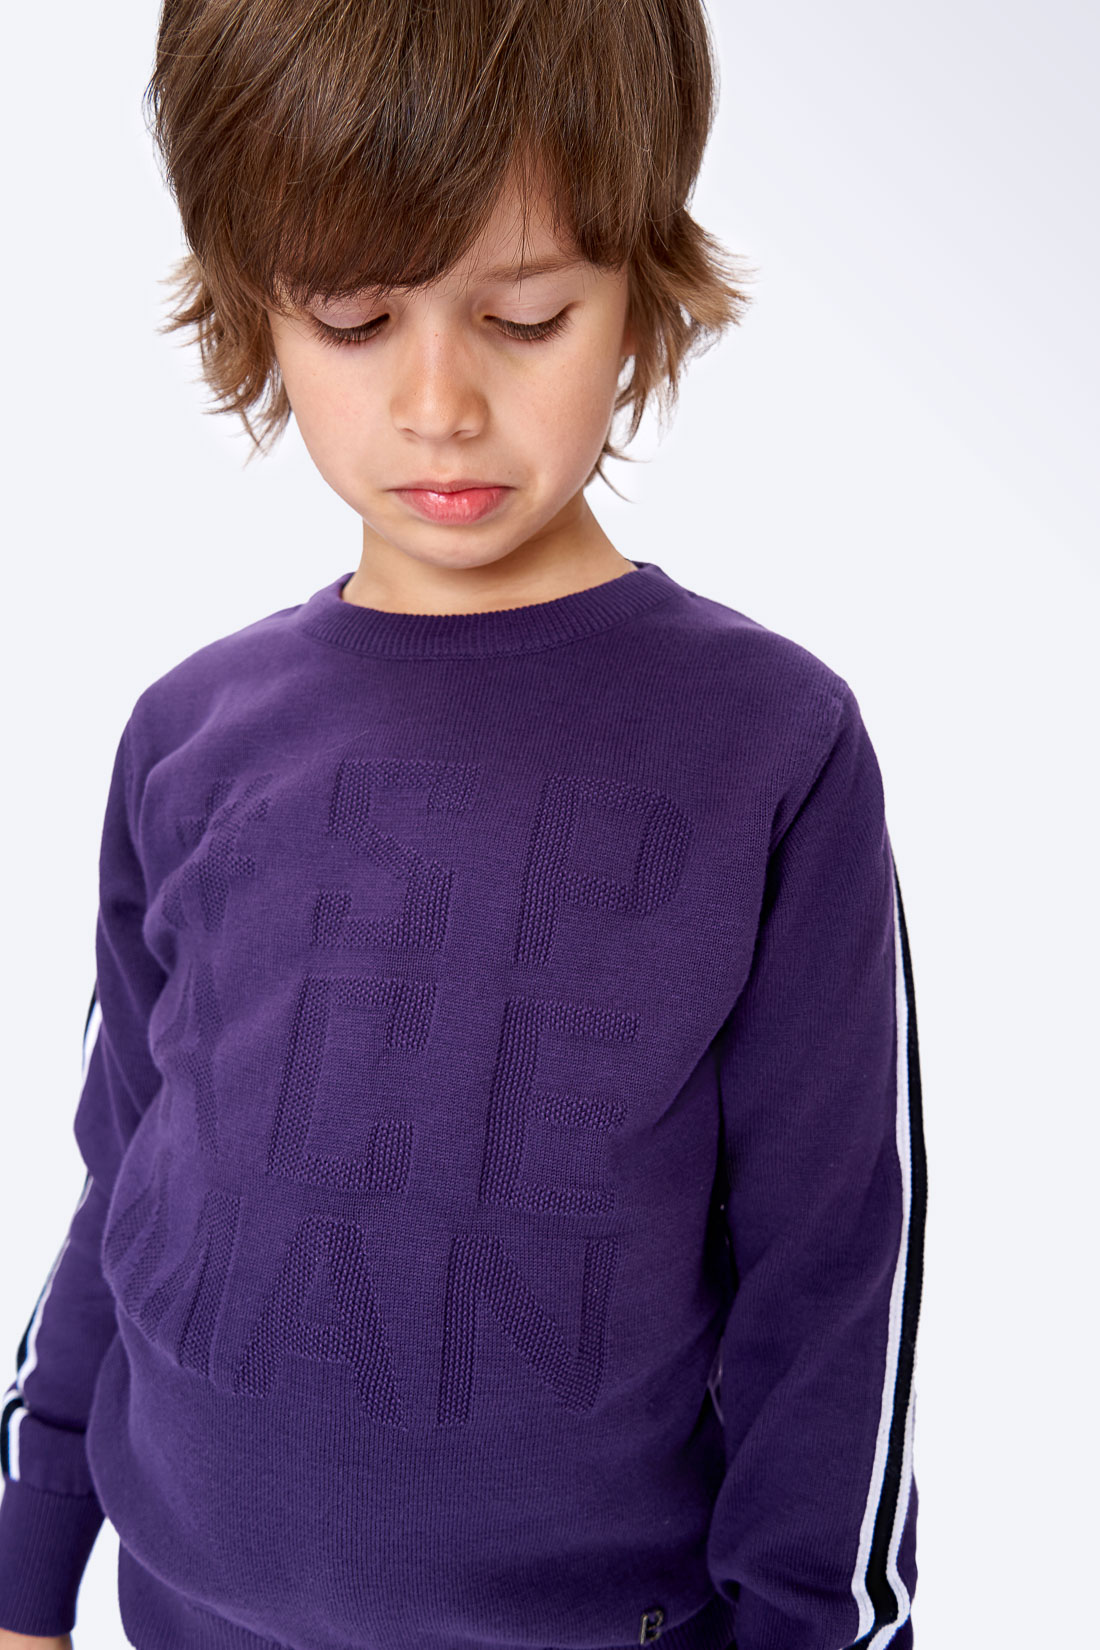 Джемпер для мальчика (арт. baon BK639503), размер 146, цвет фиолетовый Джемпер для мальчика (арт. baon BK639503) - фото 4